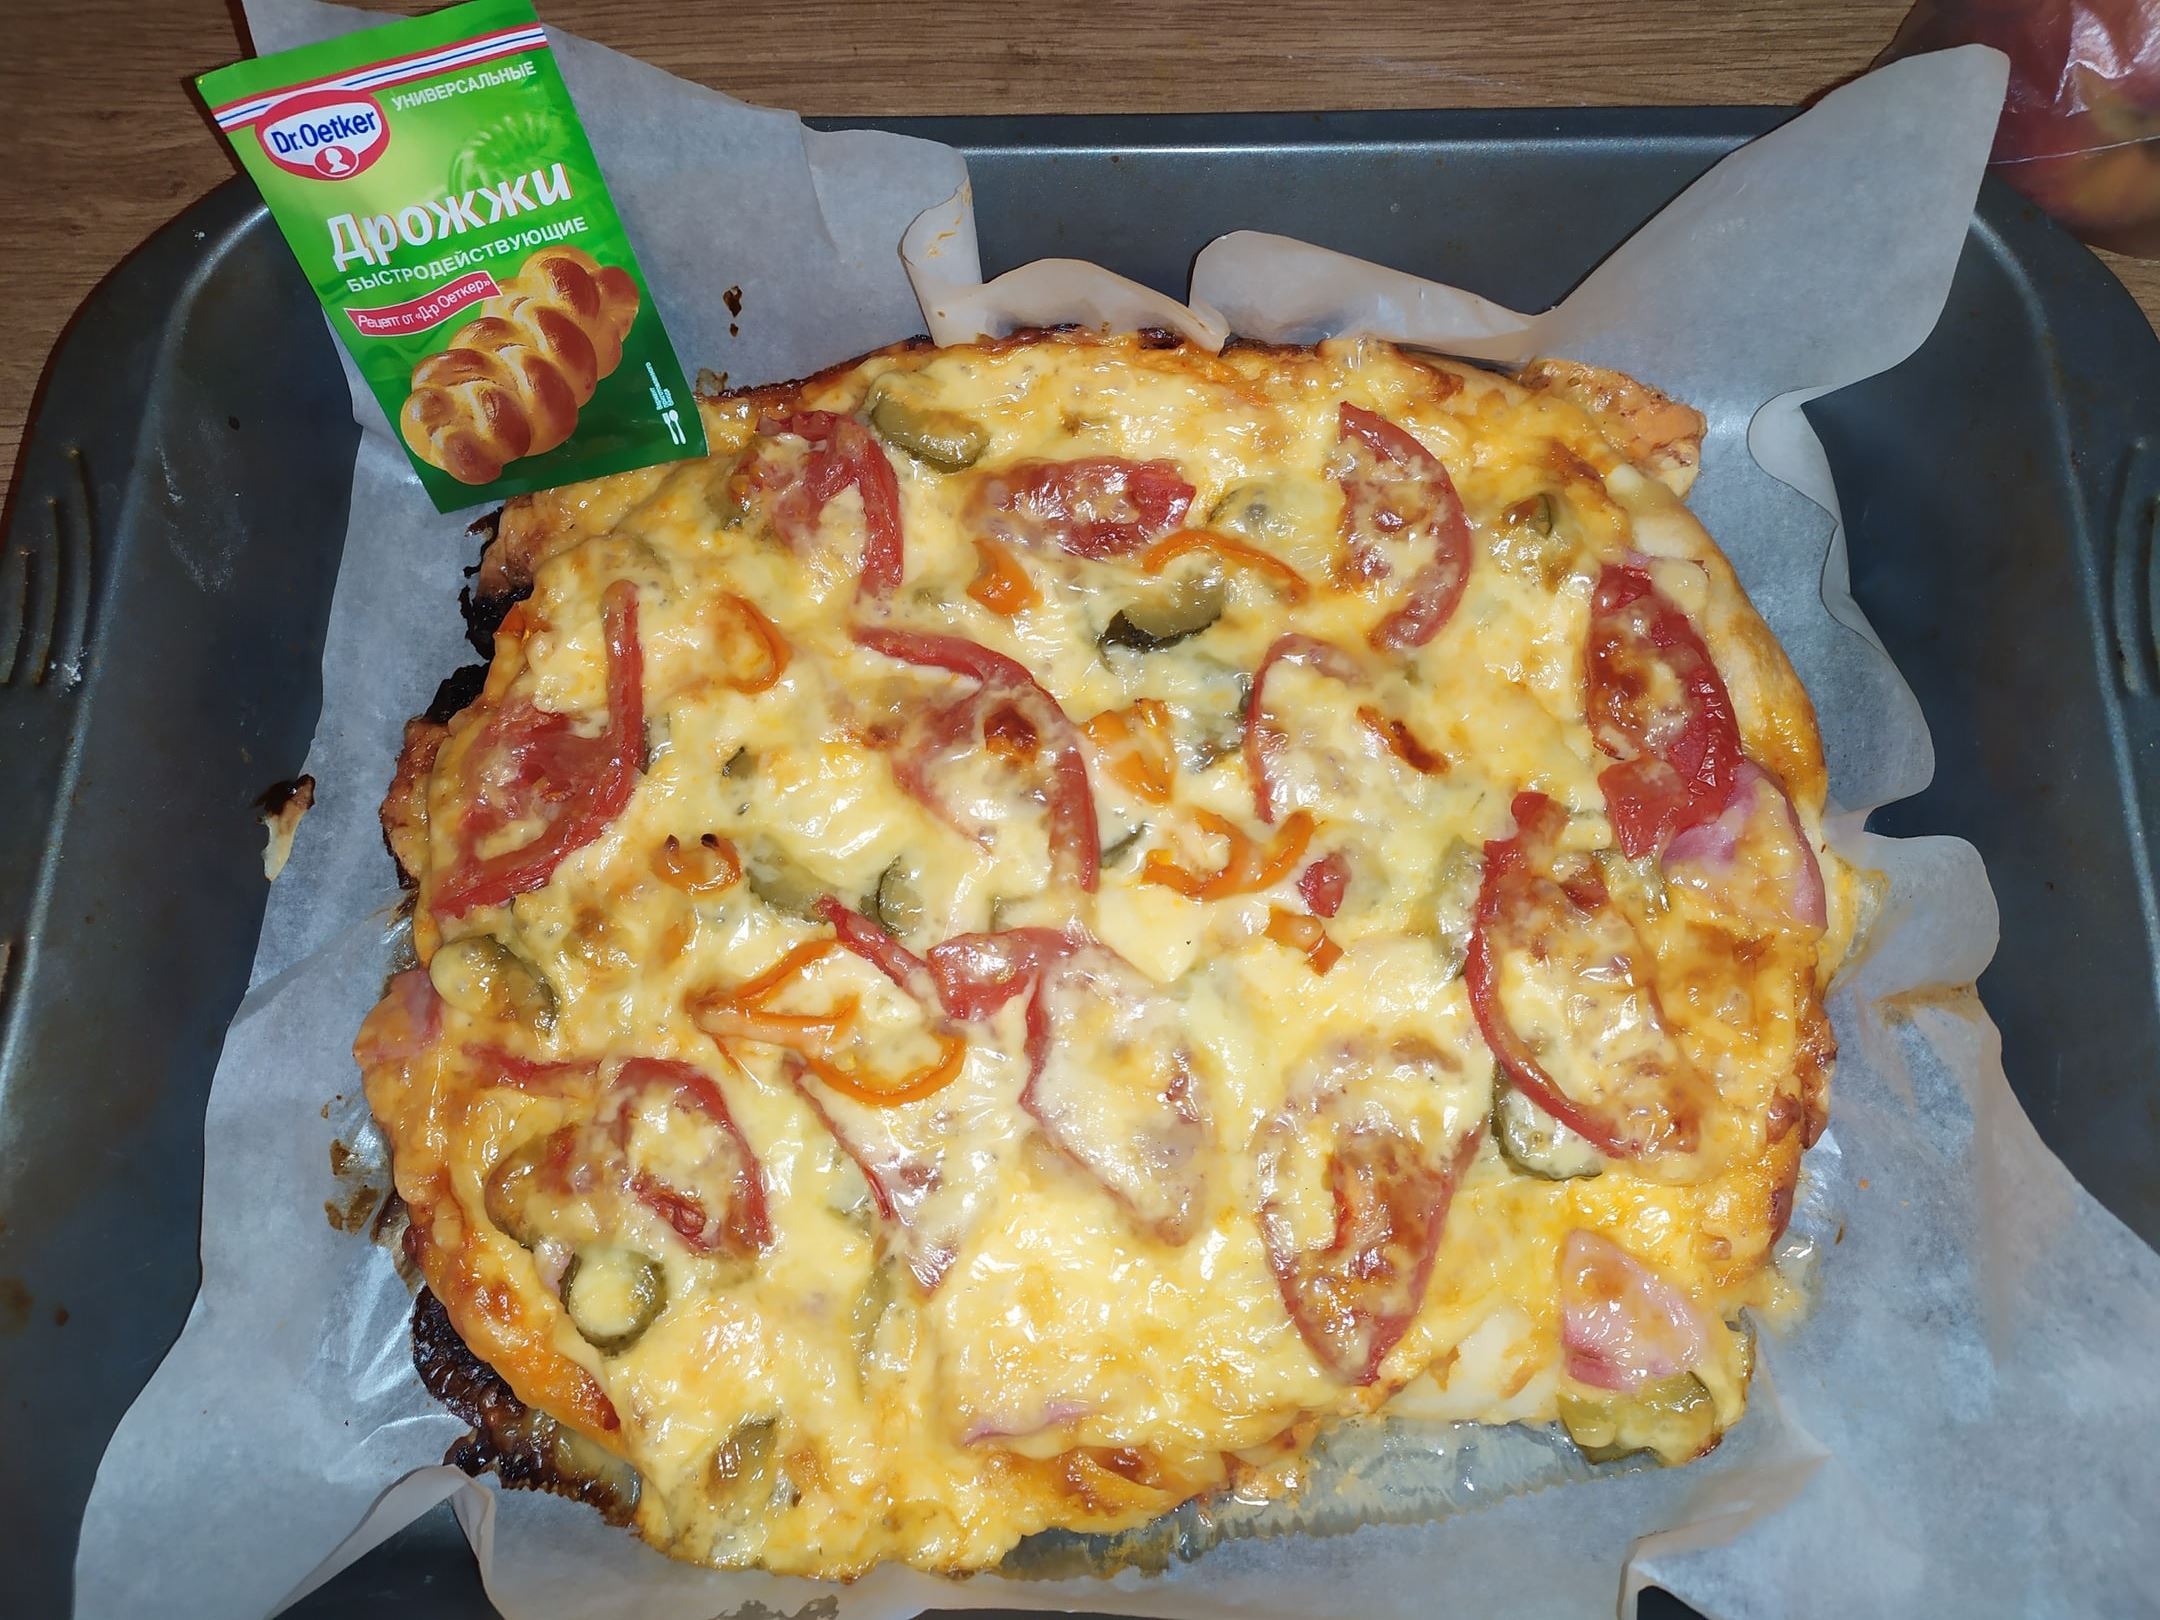 Домашняя пицца в духовке с огурцами